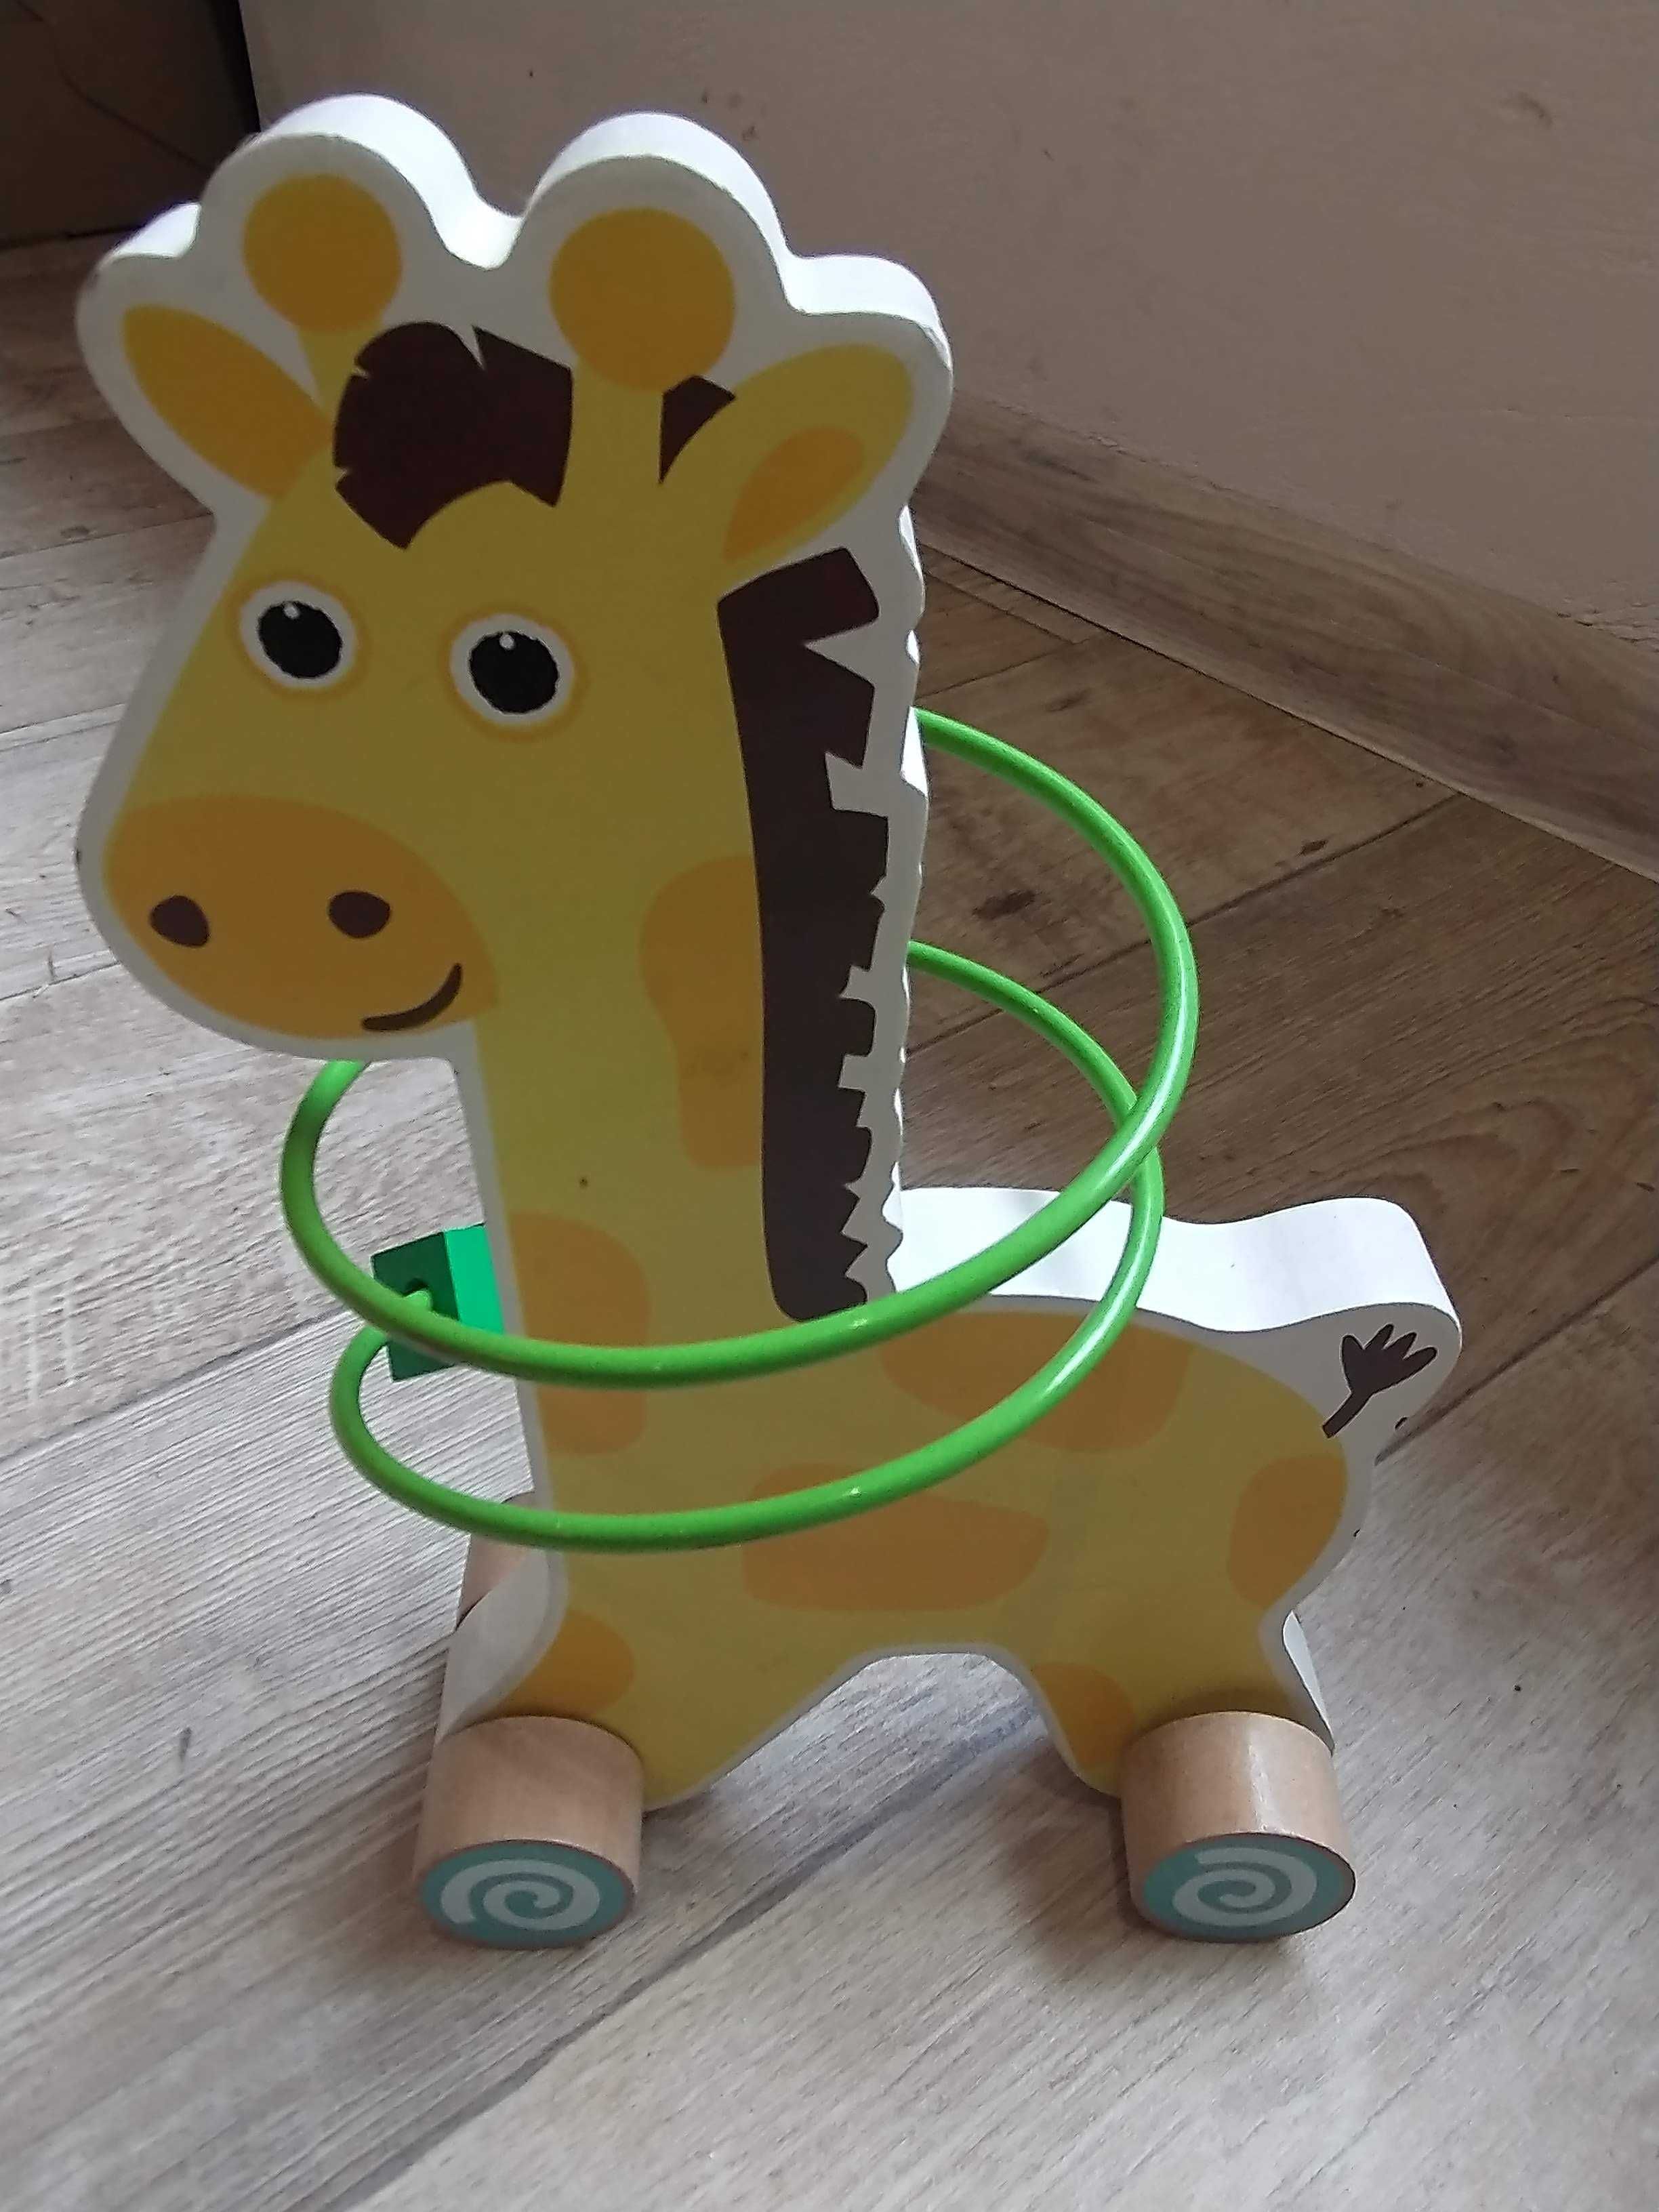 Zabawka edukacyjna żyrafa manualna drewno metal eko zręczność